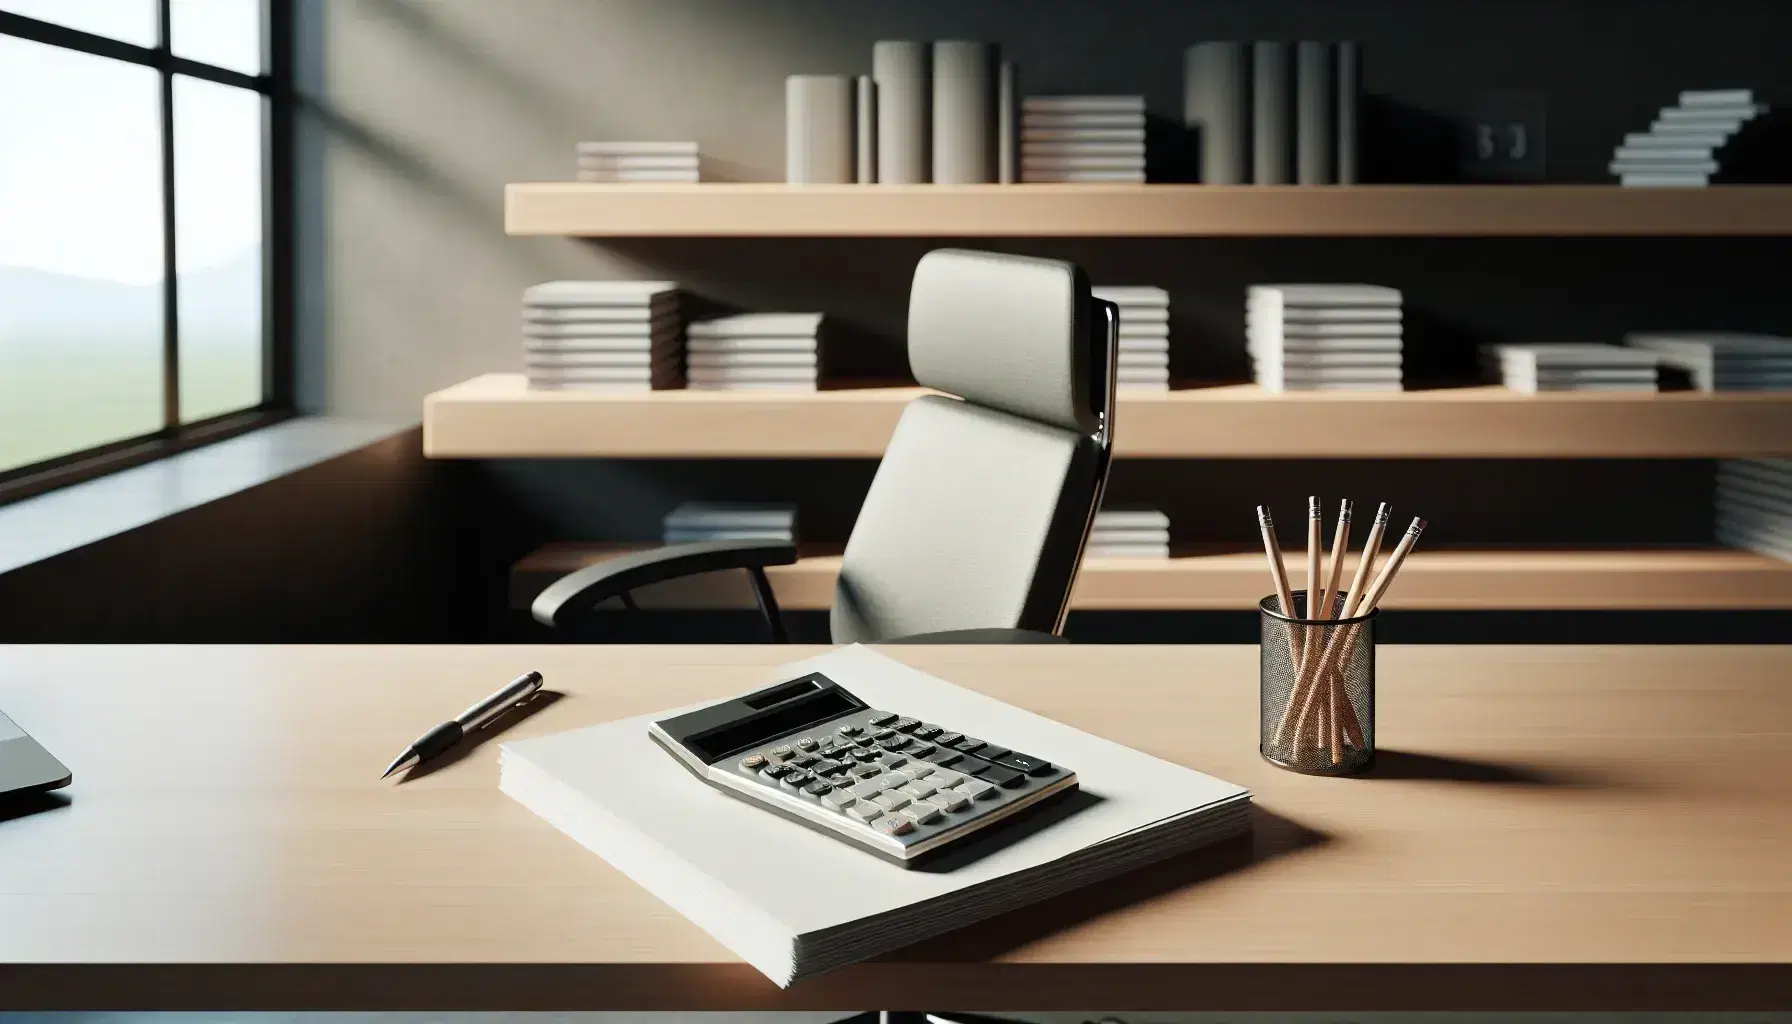 Oficina moderna y minimalista con escritorio de madera, calculadora gris, lápiz mecánico plateado y silla ergonómica negra, junto a estantería con libros y ventana que ilumina suavemente.